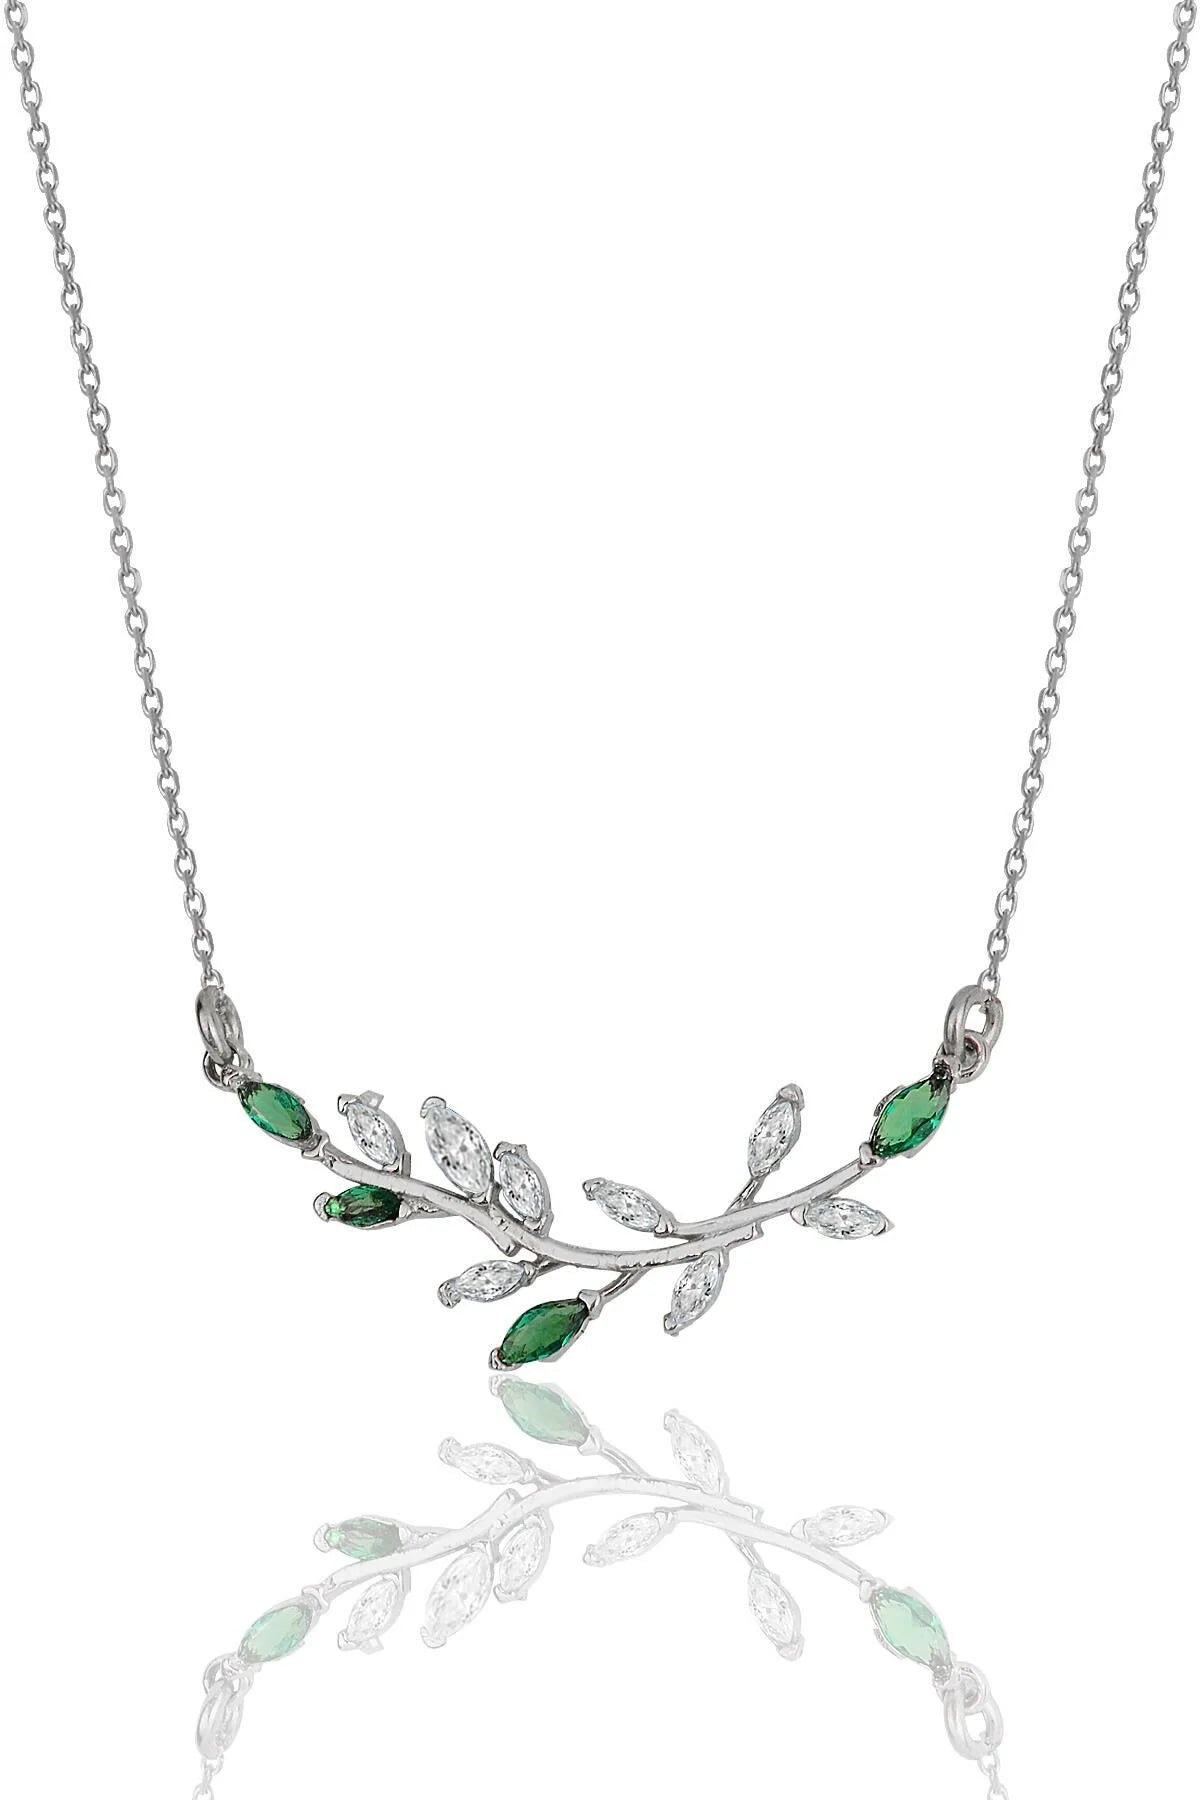 Heda Olive Branch Necklace - heda collection